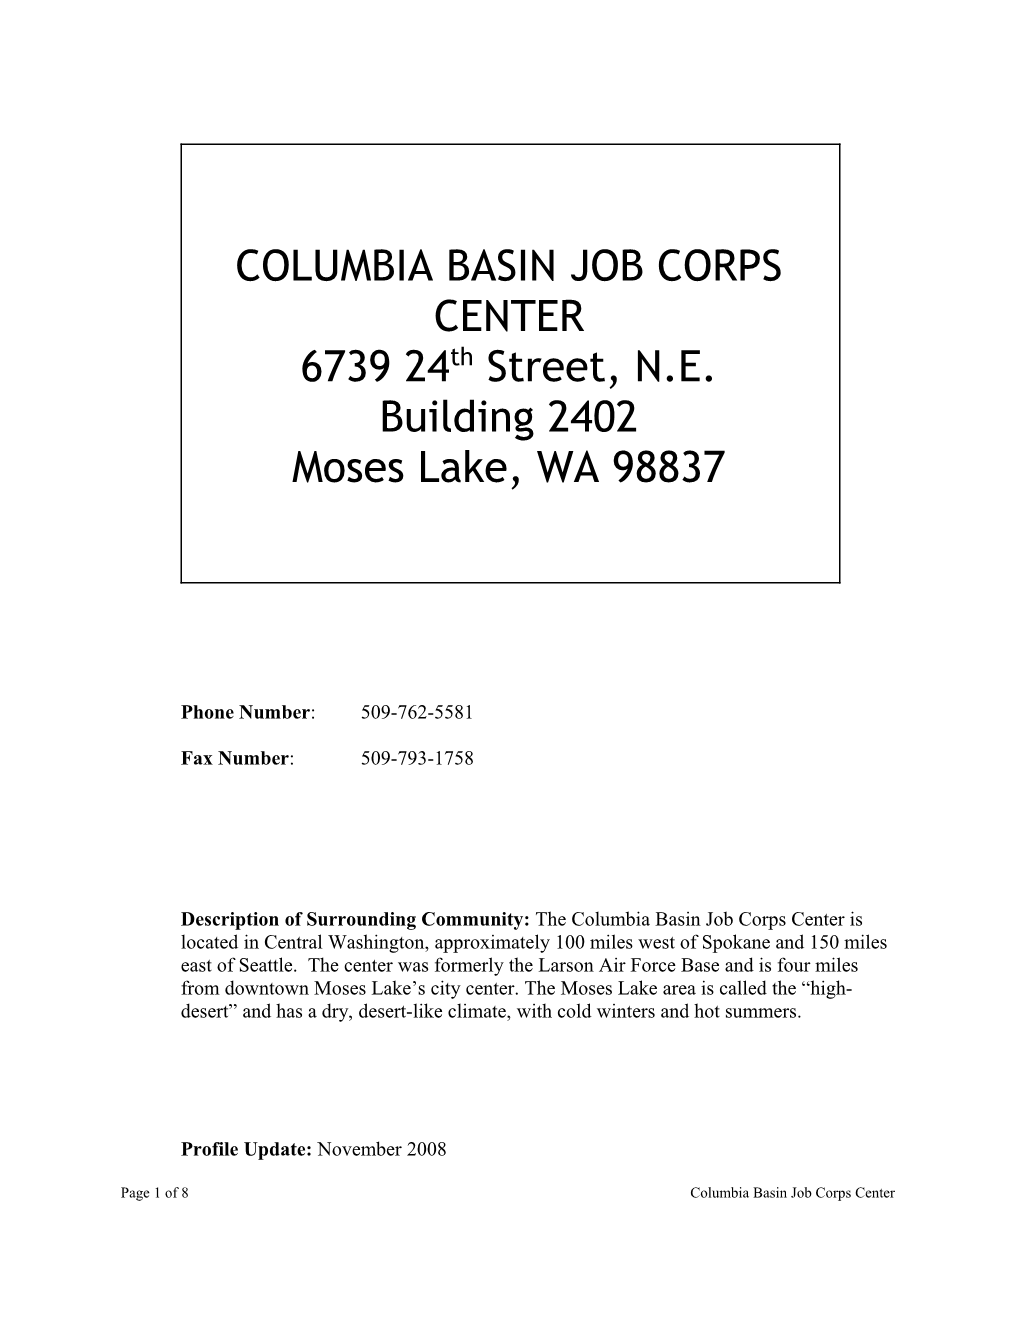 Columbia Basin Job Corps Center